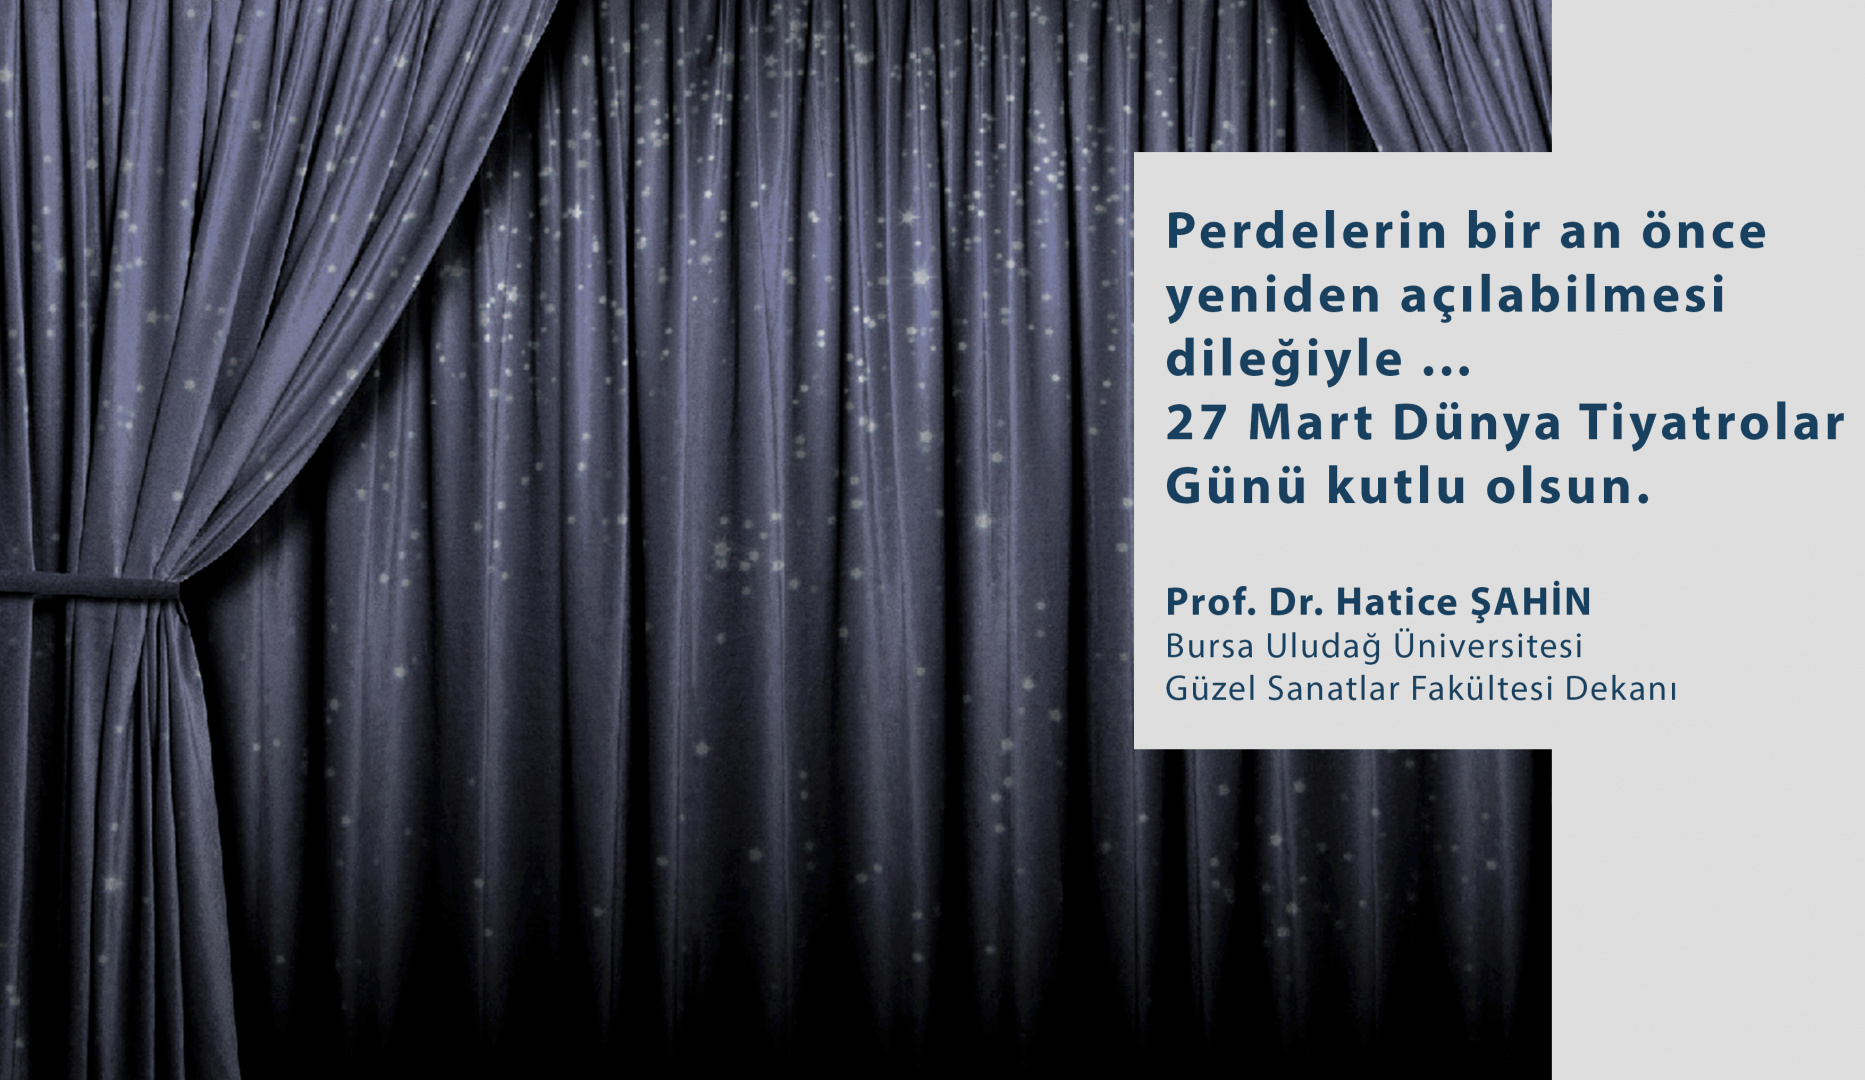  Dekanımız Sn. Prof. Dr. Hatice ŞAHİN'in 27 Mart Dünya Tiyatrolar Günü Mesajı  